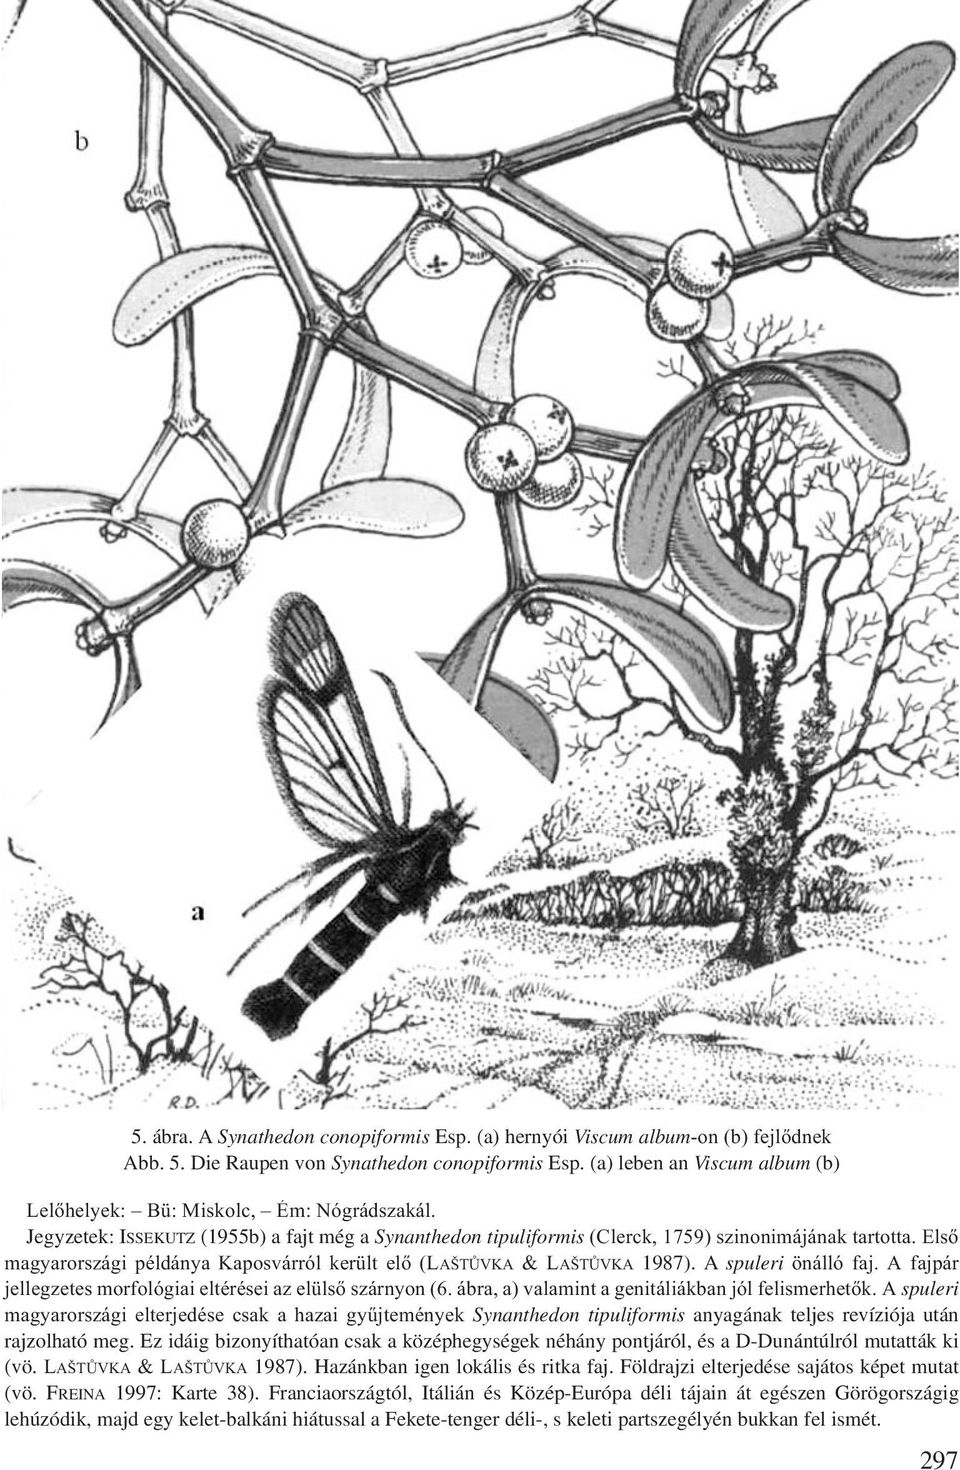 Első magyarországi példánya Kaposvárról került elő (LAŠTŮVKA & LAŠTŮVKA 1987). A spuleri önálló faj. A fajpár jellegzetes morfológiai eltérései az elülső szárnyon (6.